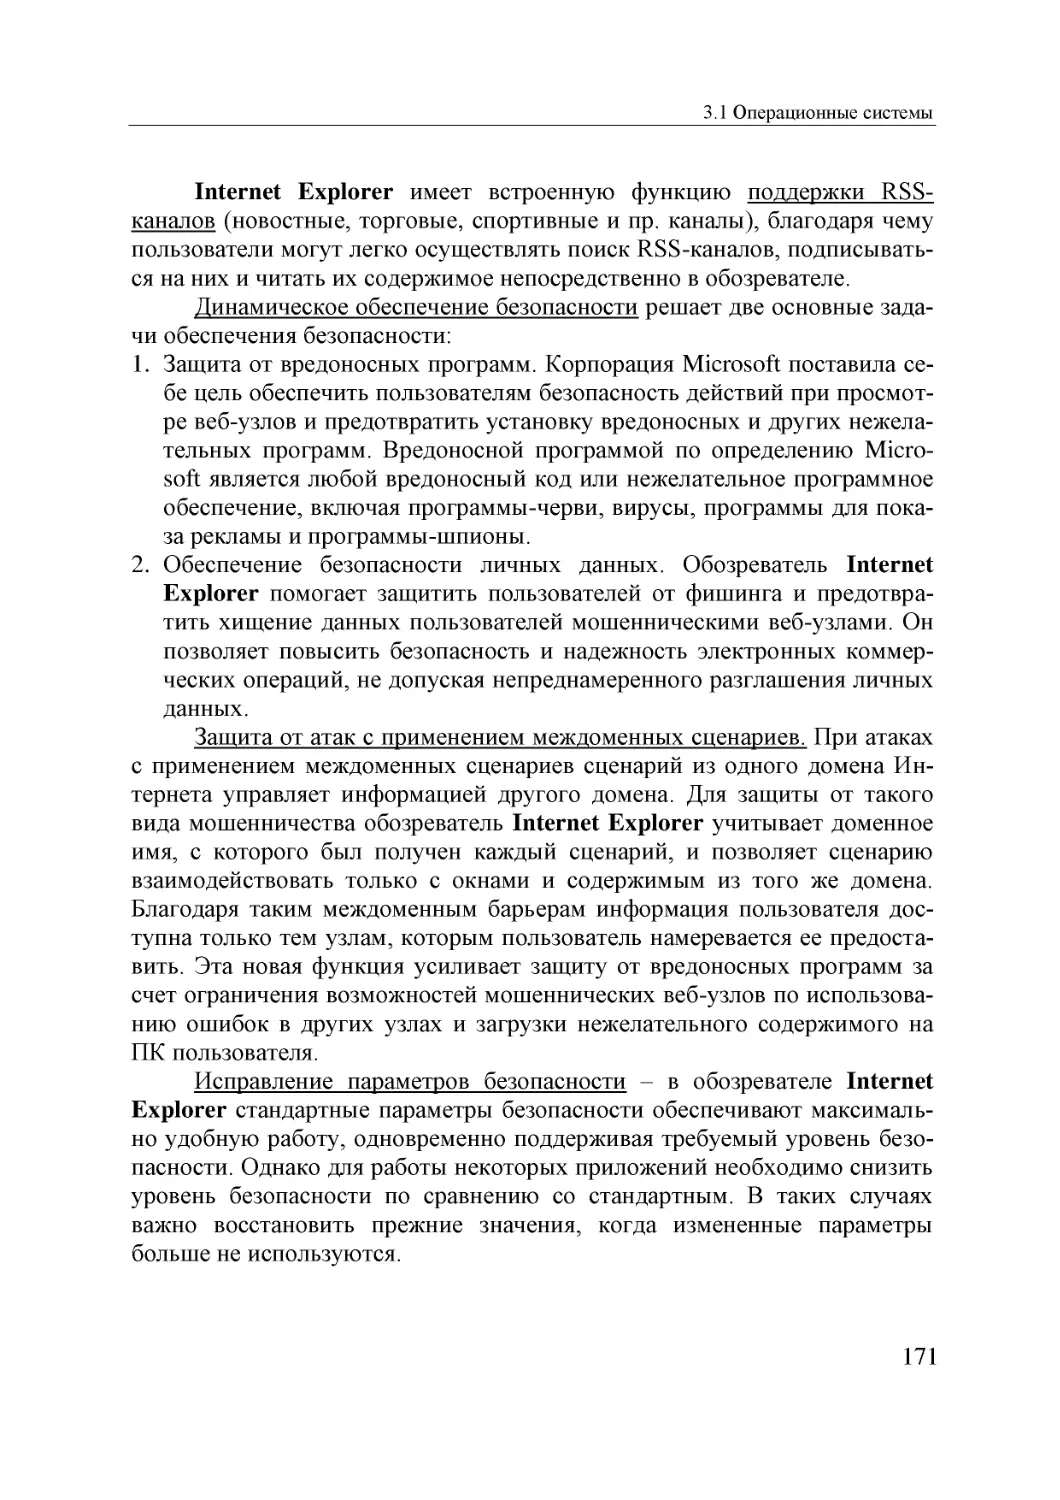 Informatika_Uchebnik_dlya_vuzov_2010 171